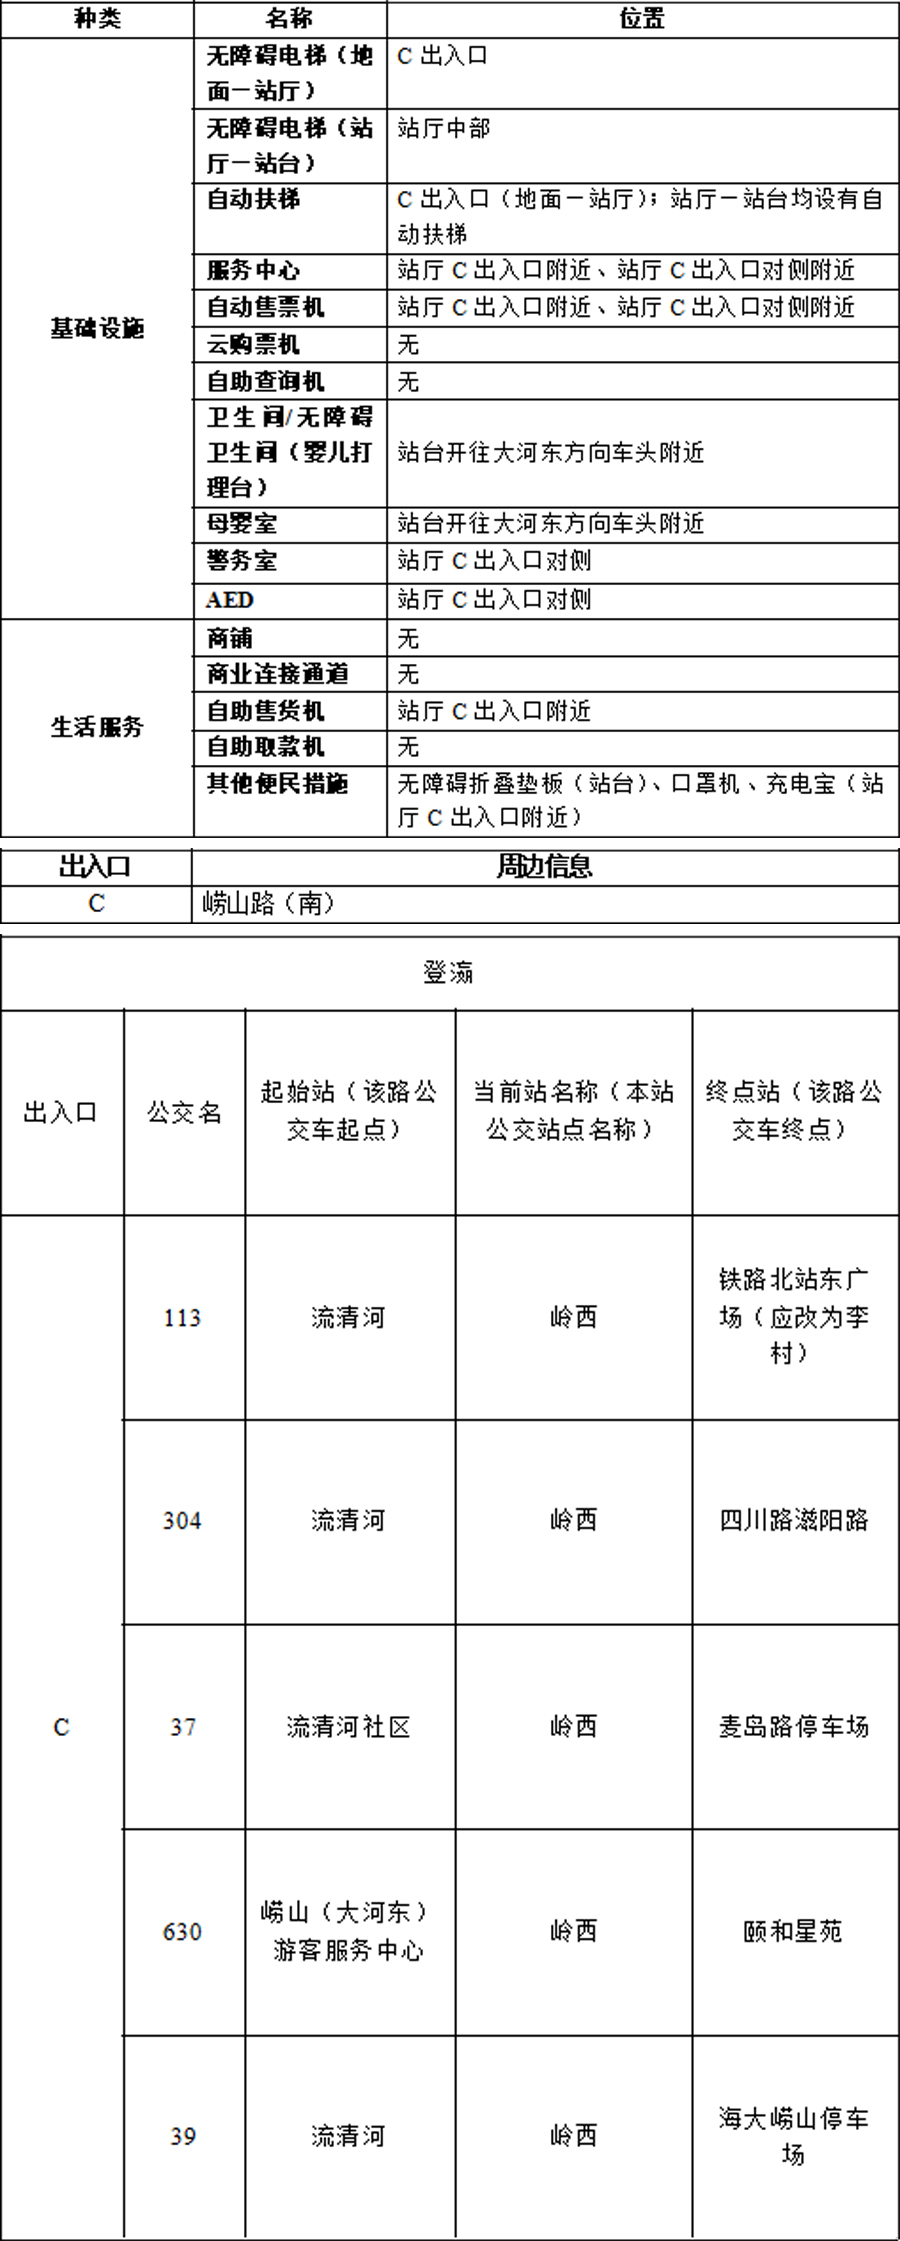 24登瀛站-青岛地铁APP站点信息0816 拷贝.jpg